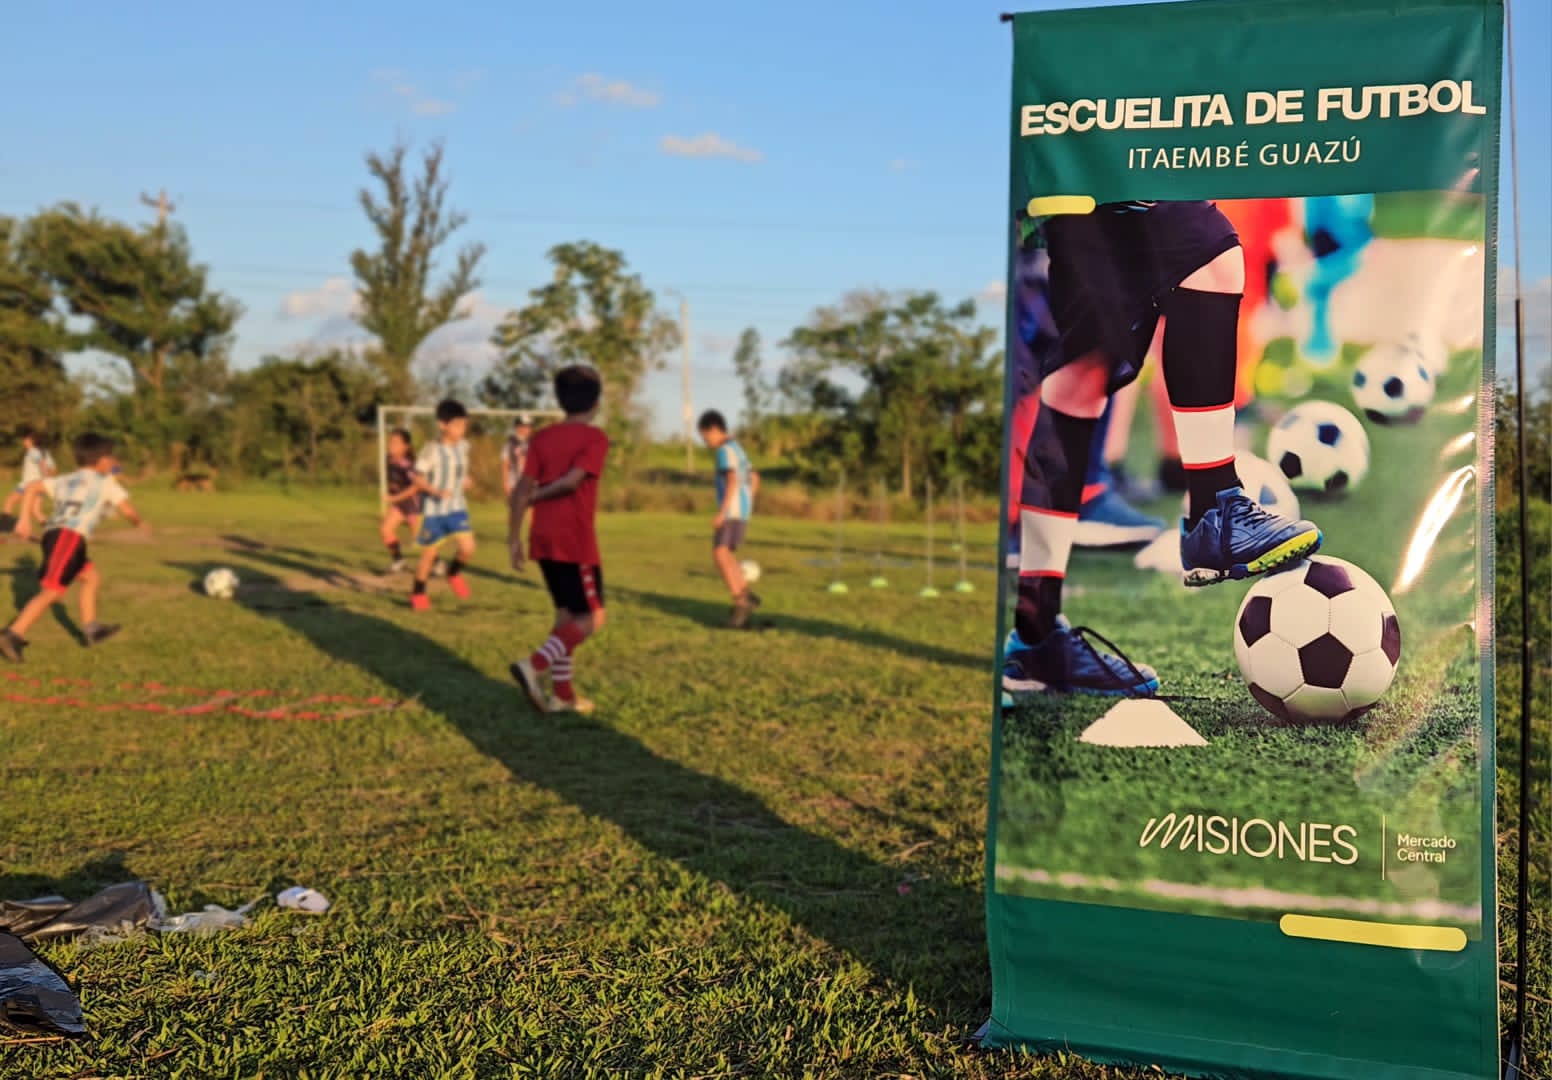 Comunidad de Itaembé Guazú destaca la puesta en funcionamiento de la Escuelita de Fútbol del Mercado Central imagen-58